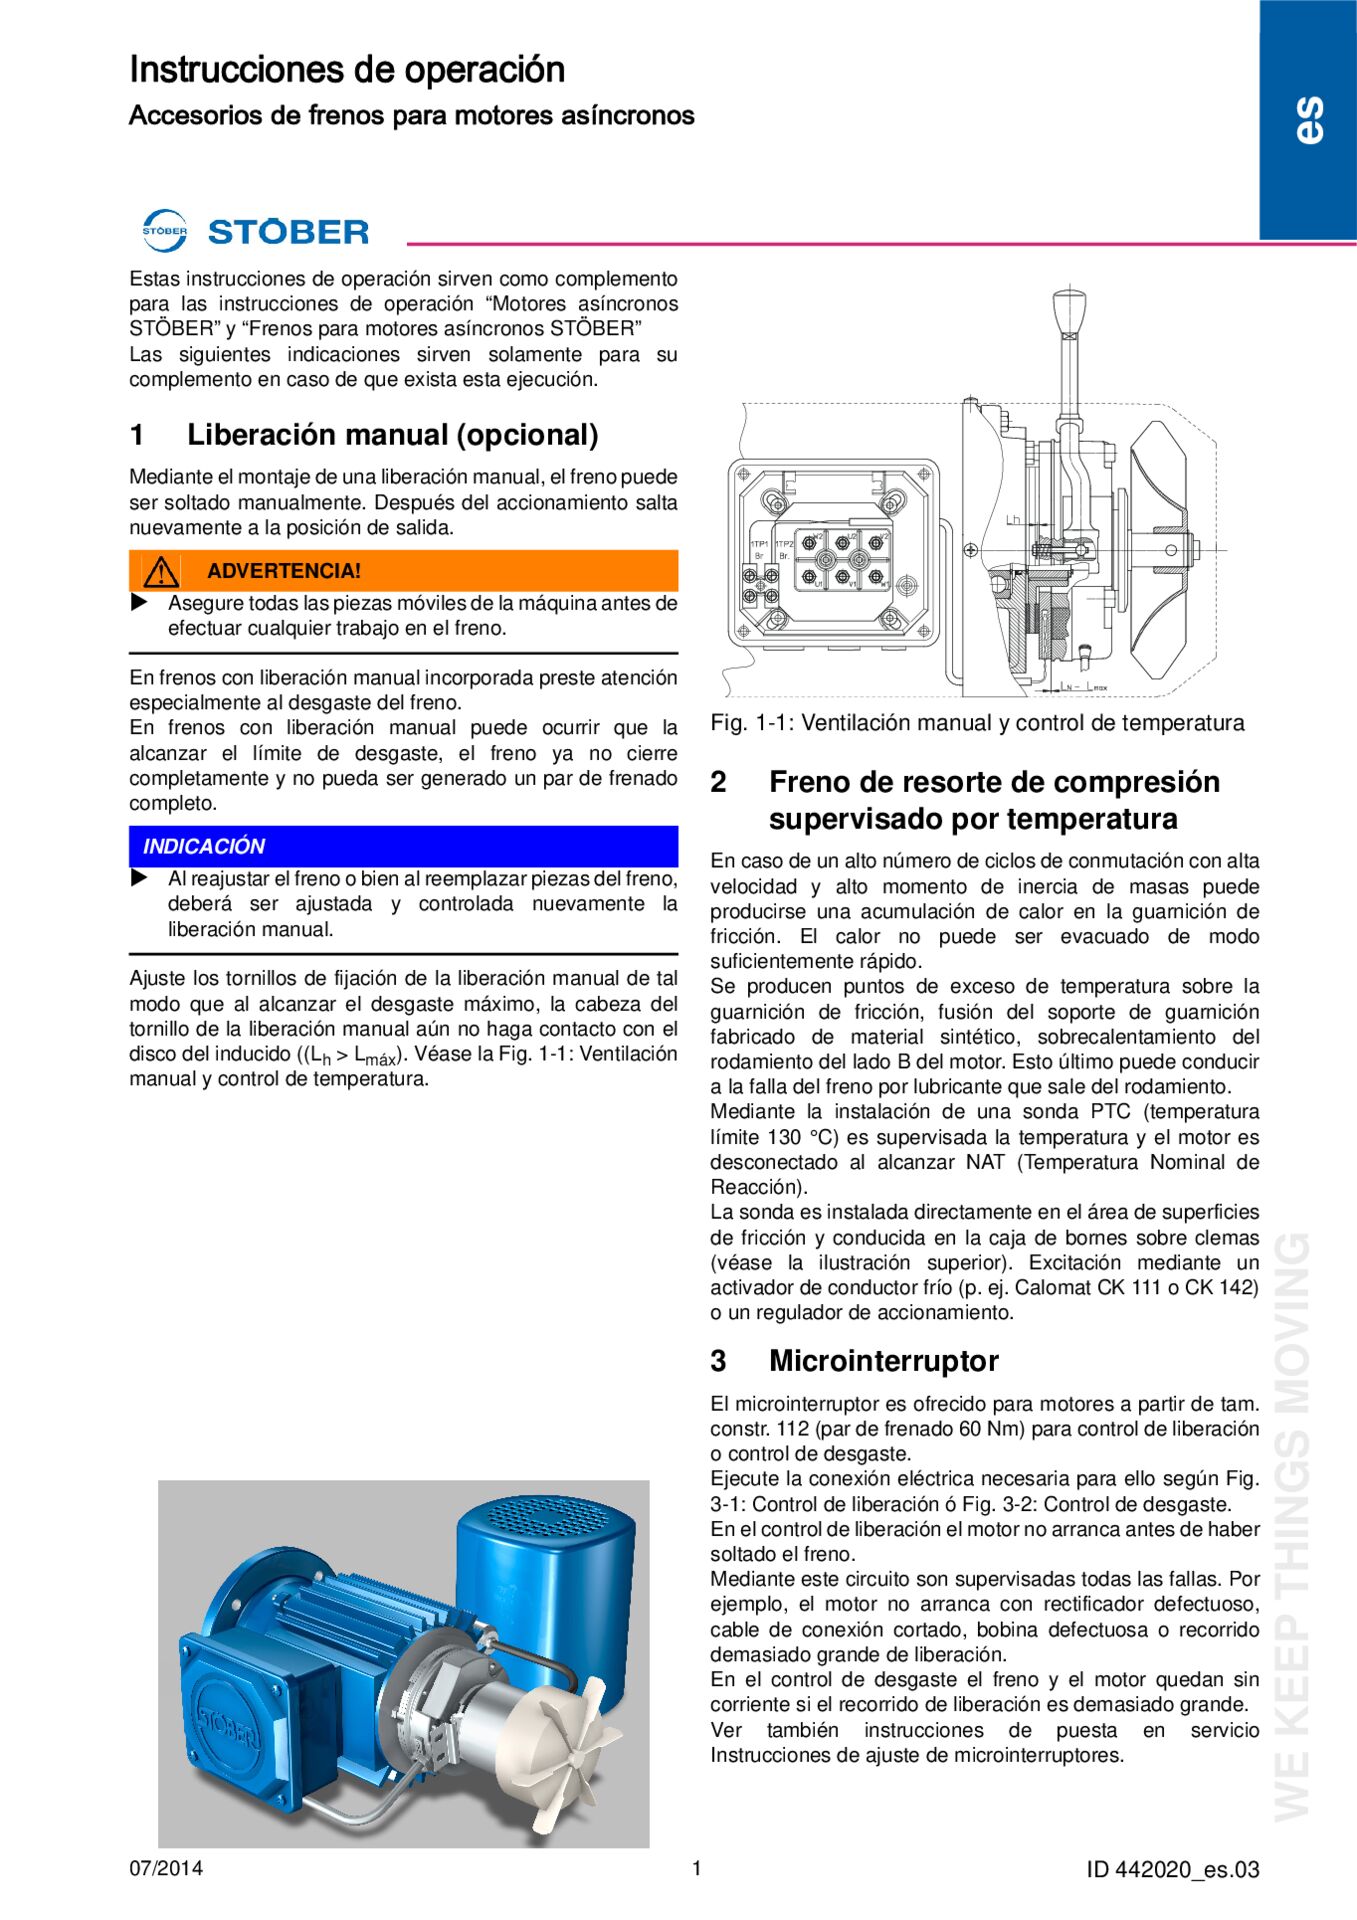 Instrucciones de operacion Frenos para motores asincronos